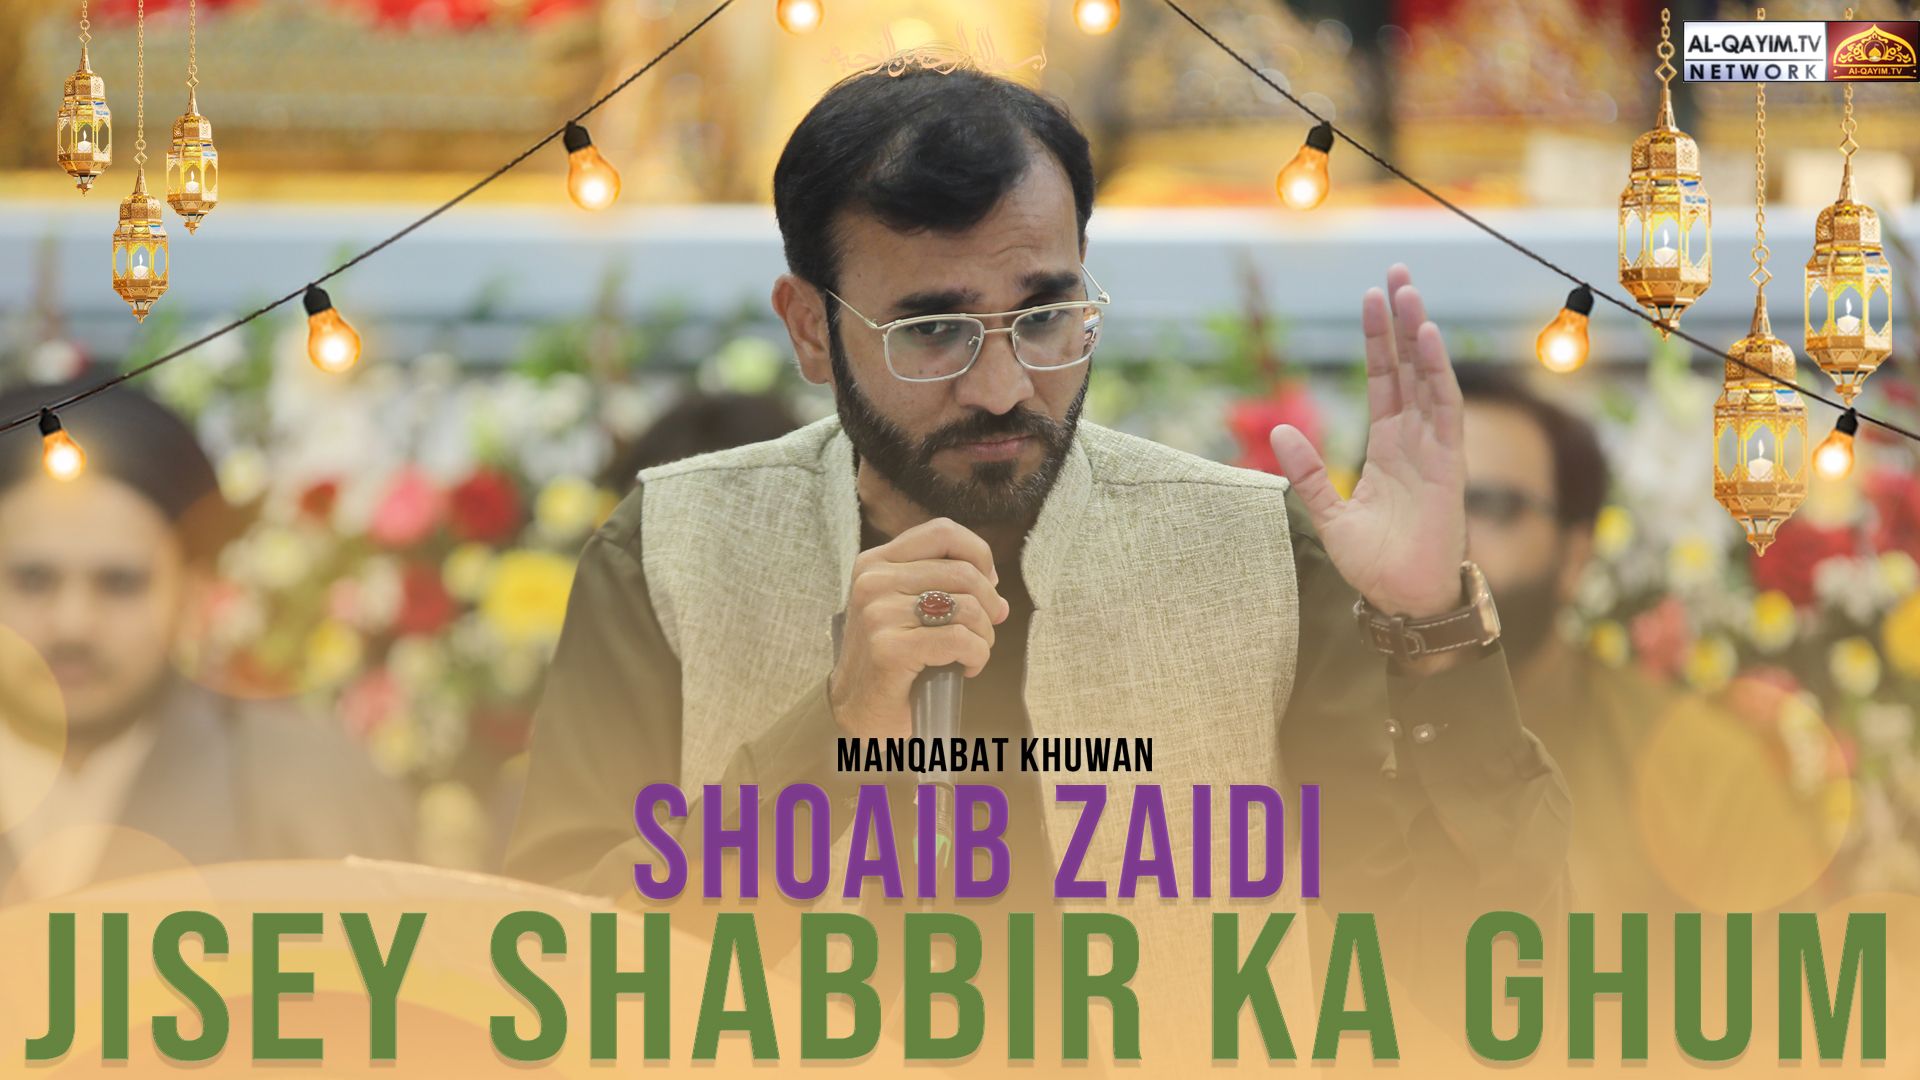 Shoaib Zaidi | Jisey Shabbir Ka Ghum | Jashan Anwar-e-Shaban - 25 Shaban 2023 | Zaidi House, Karachi